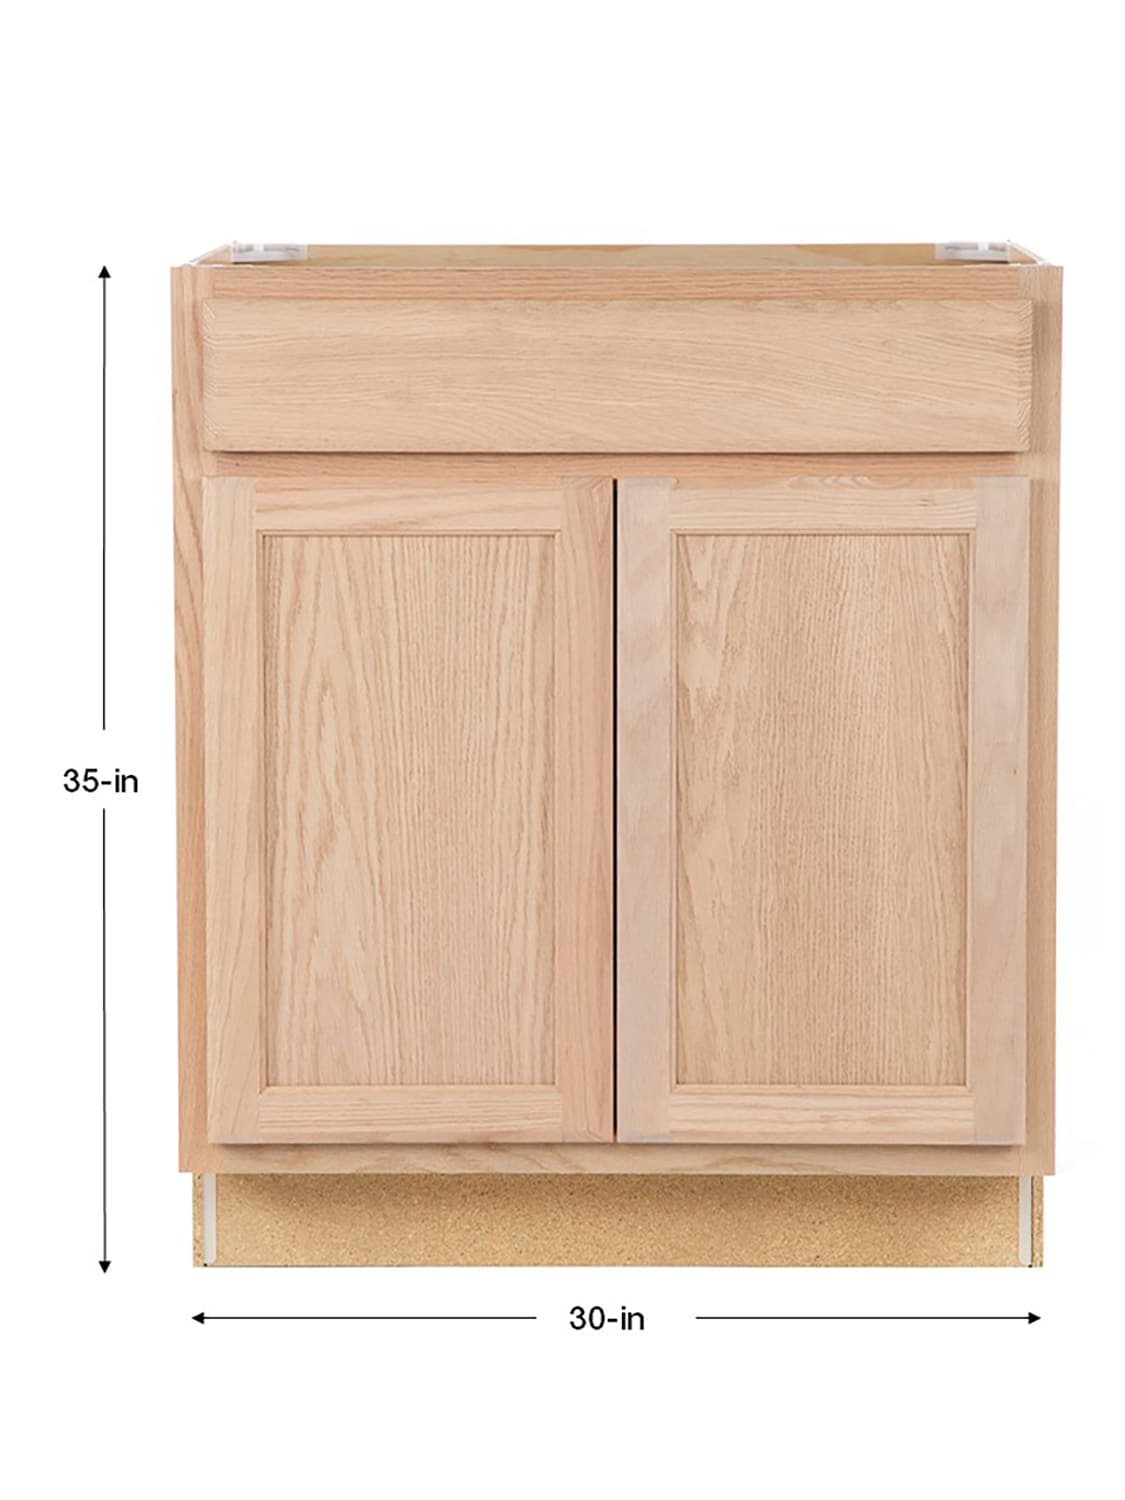 Oak Bathroom Vanity Cabinet, 33 Inch Vanity Base Cabinet Dimensions